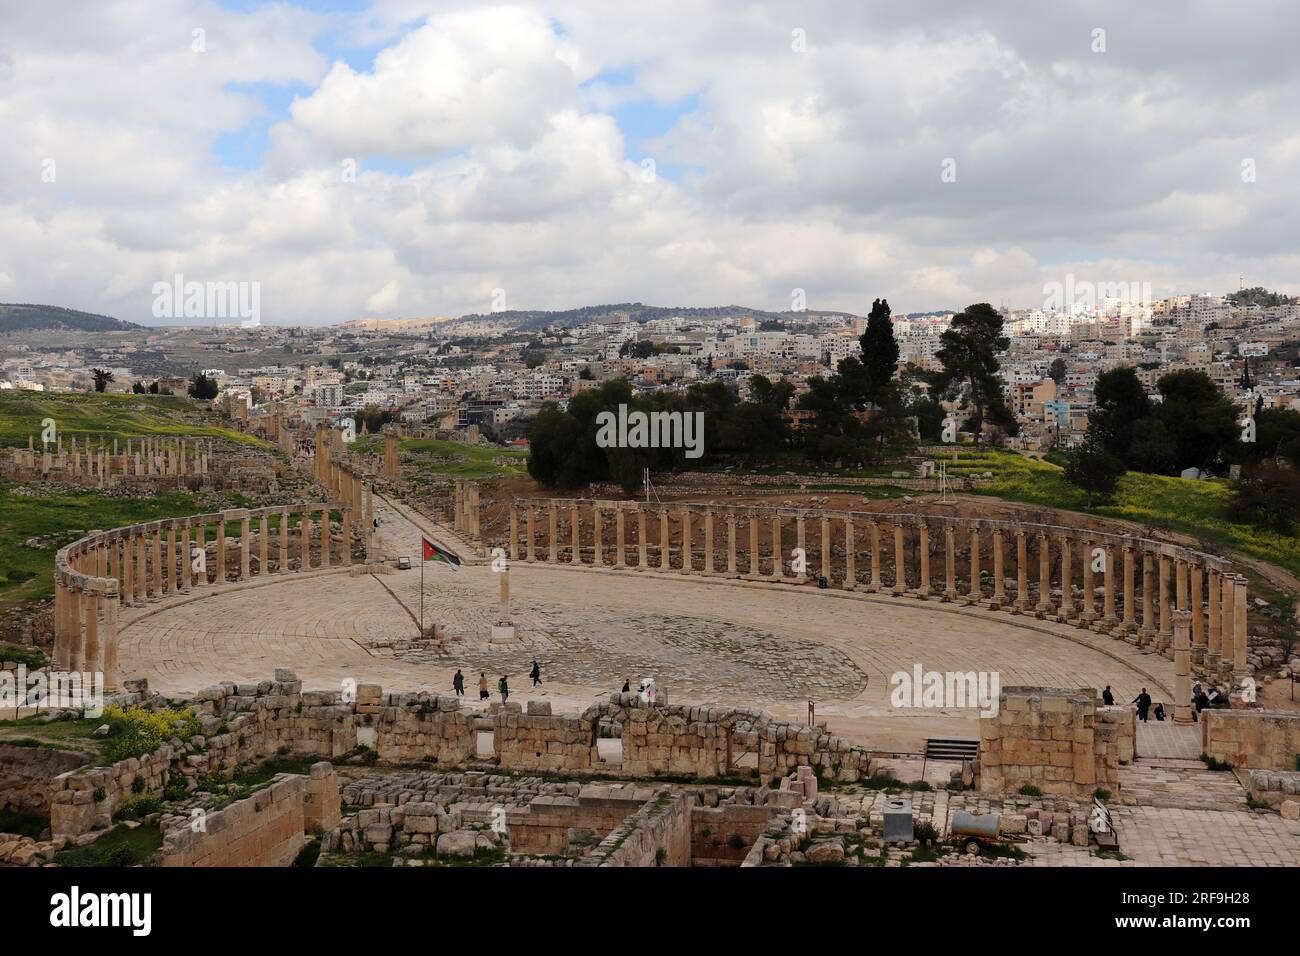 Colonnes du Forum ovale dans l'ancien Jerash, Jordanie (ville de Rome) et nouveaux bâtiments de Jordaniens / drapeau jordanien Banque D'Images